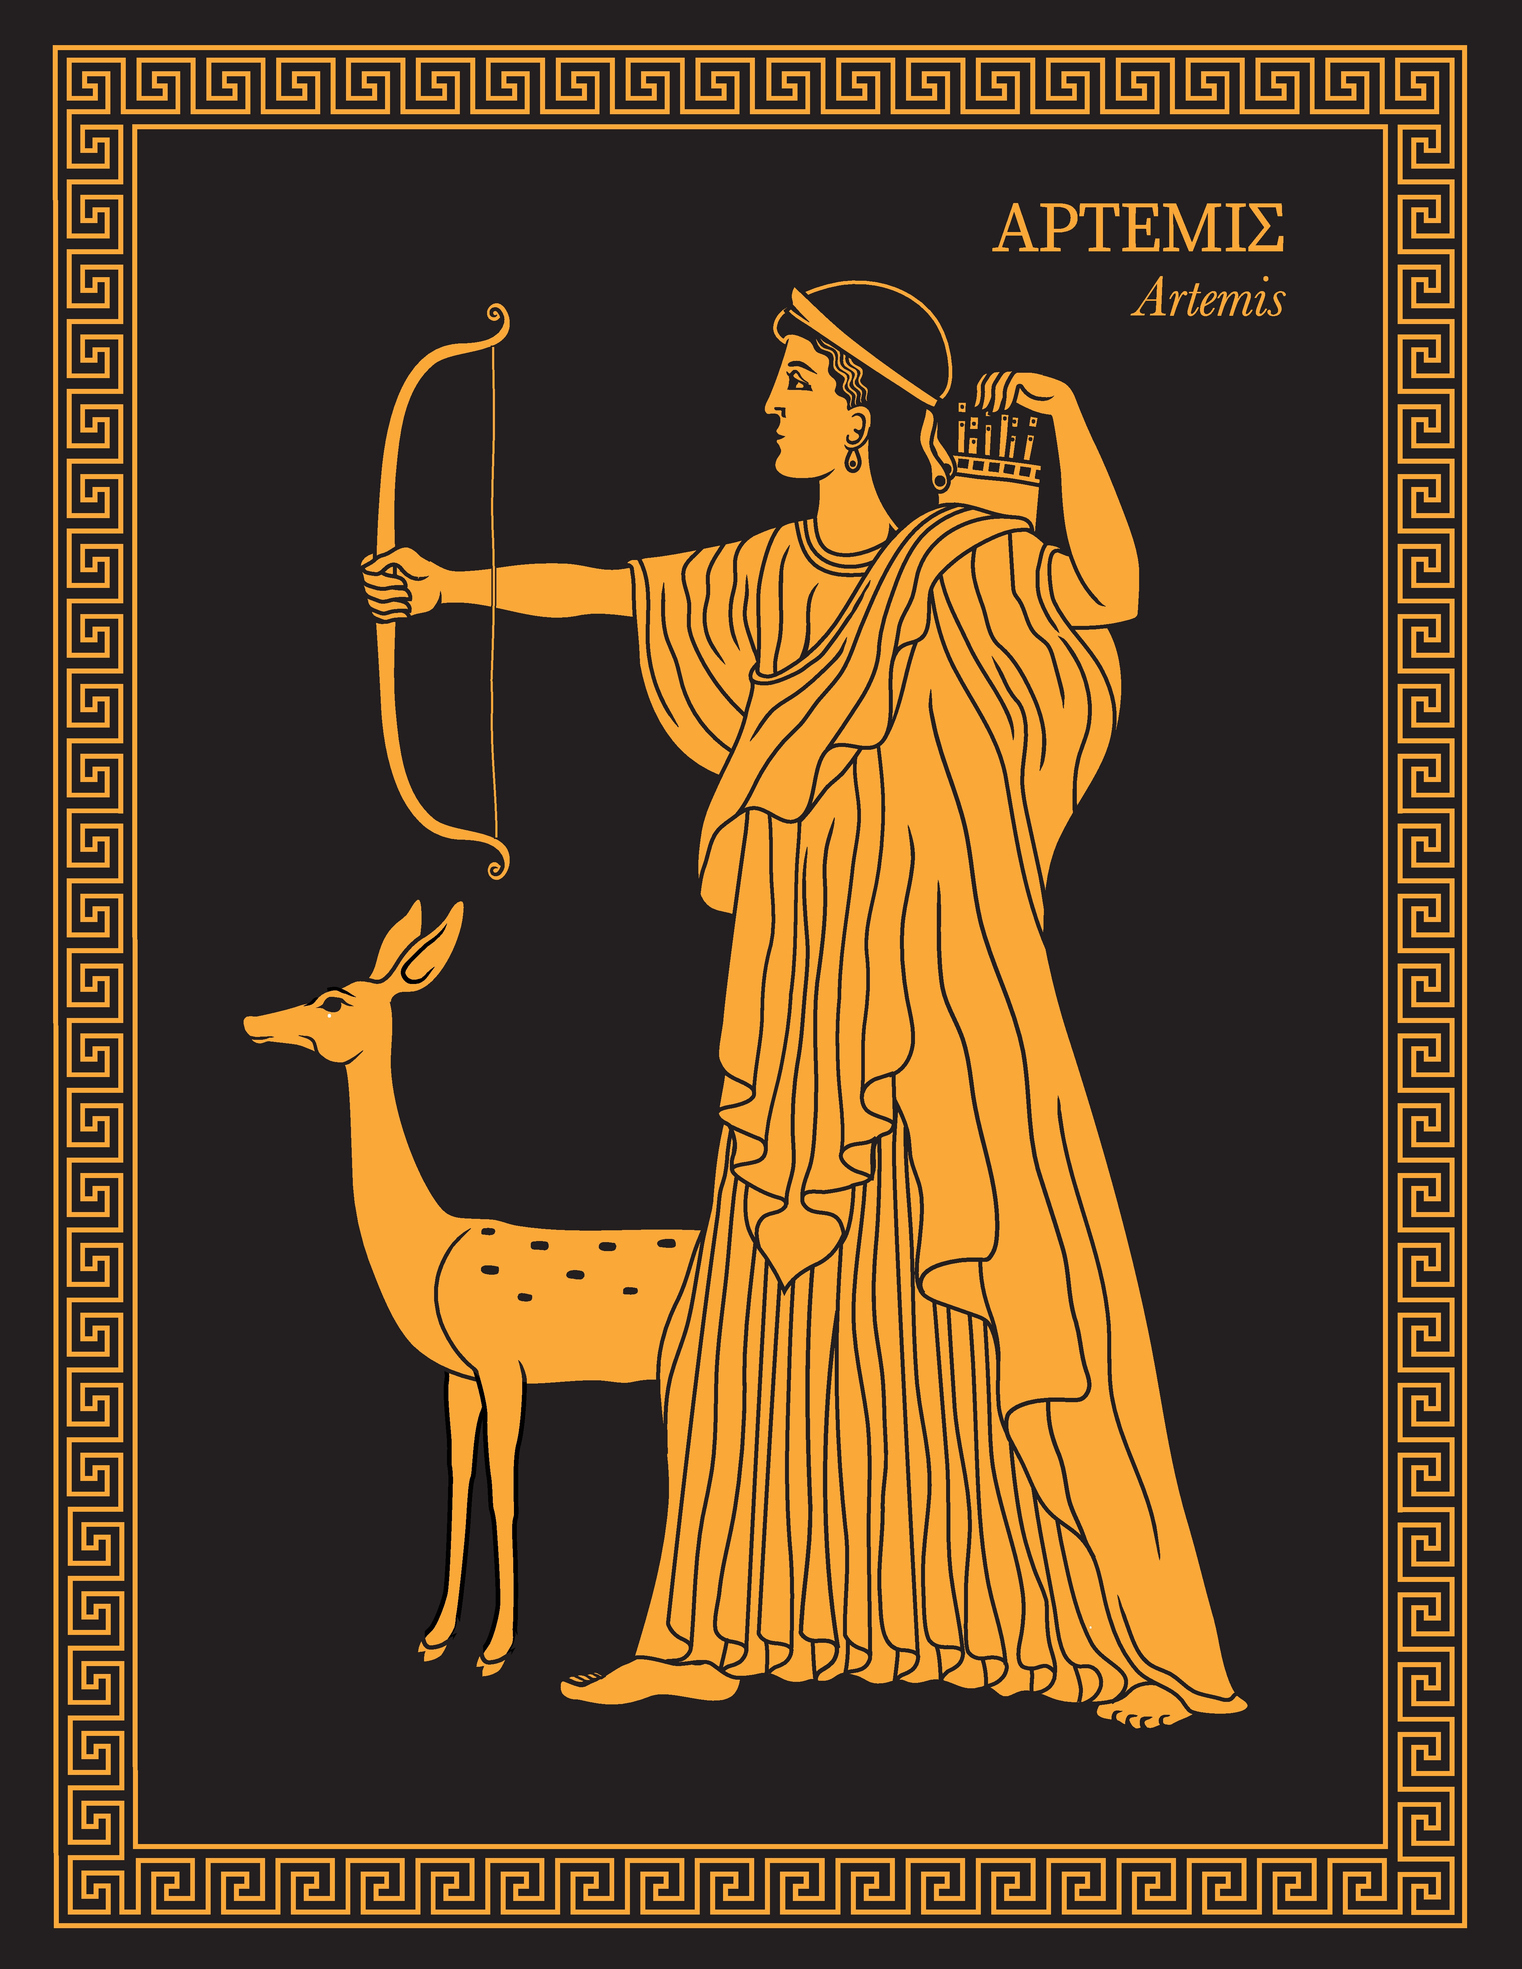 Greek artwork of Artemis and her dog